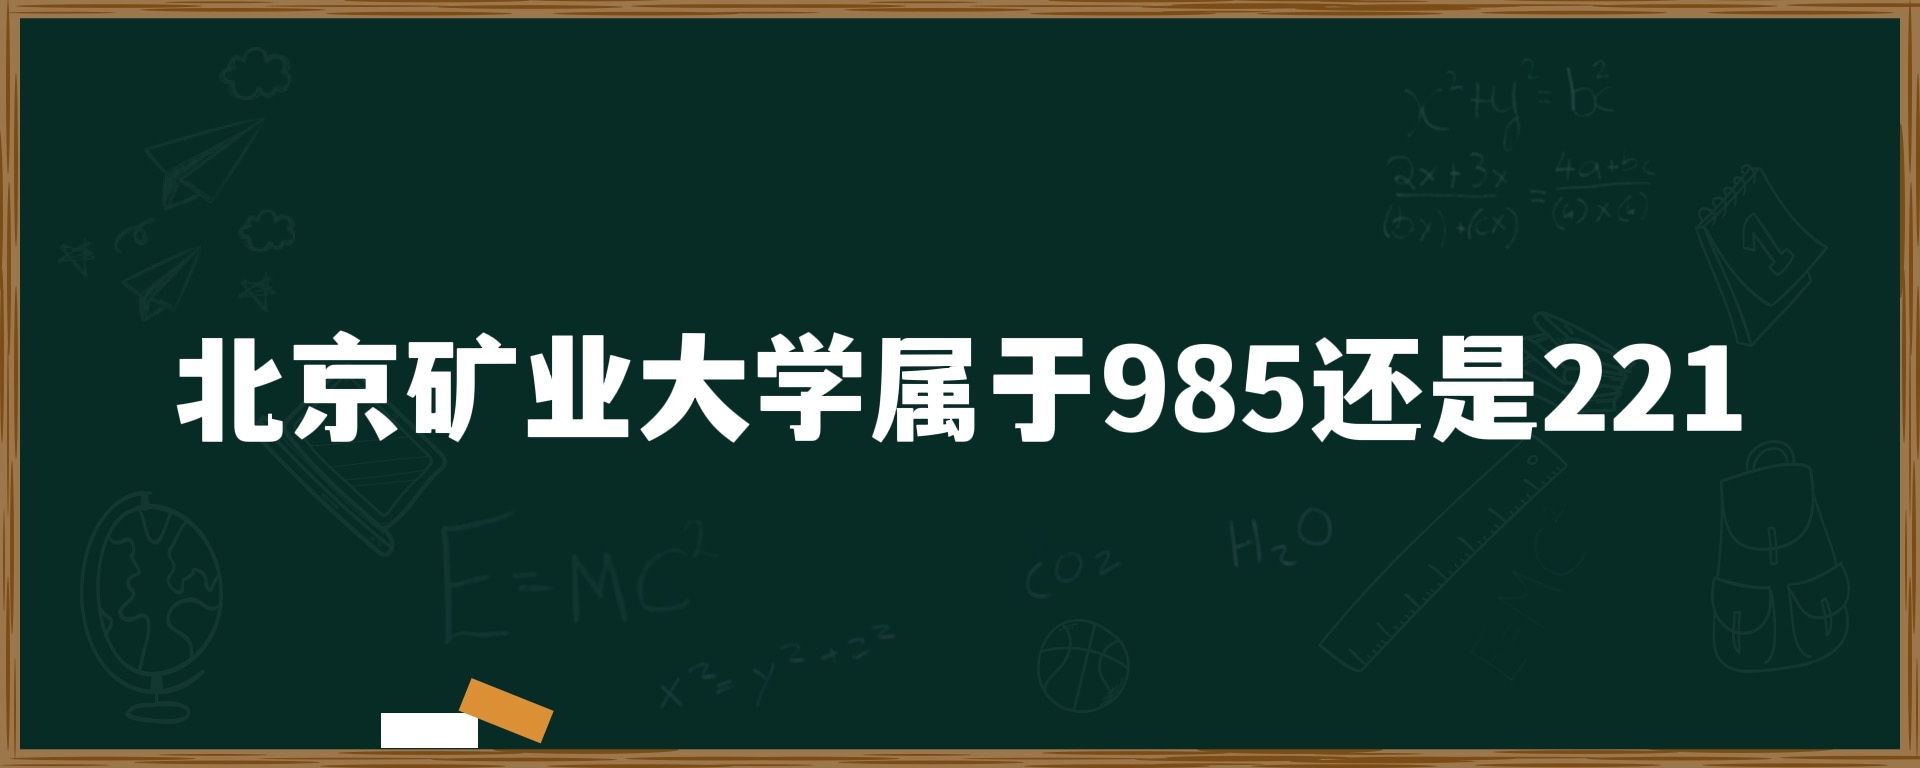 北京矿业大学属于985还是211